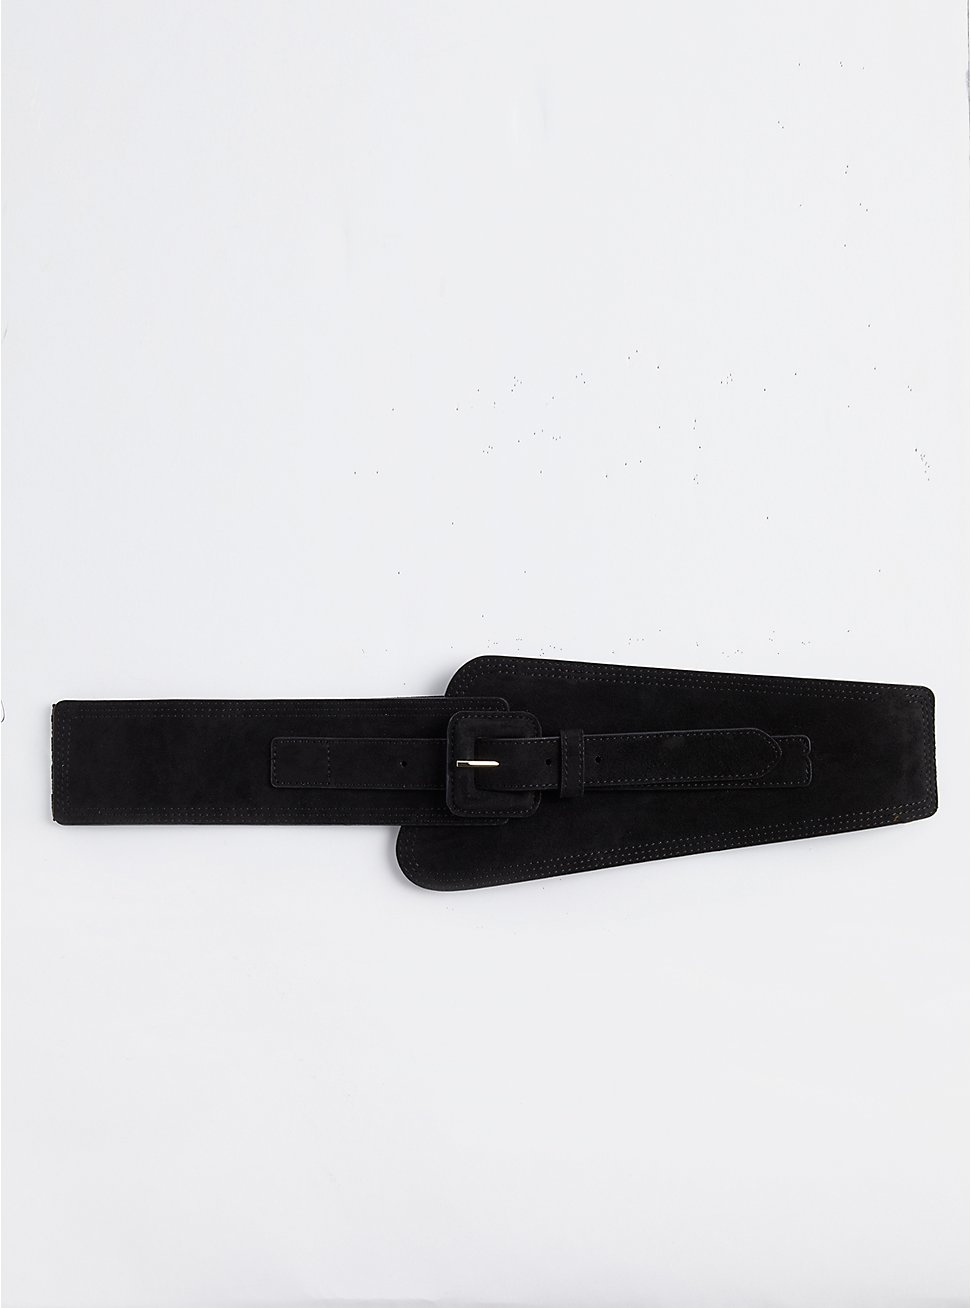 Plus Size Stretch Waist Belt - Faux Suede Black, BLACK, hi-res